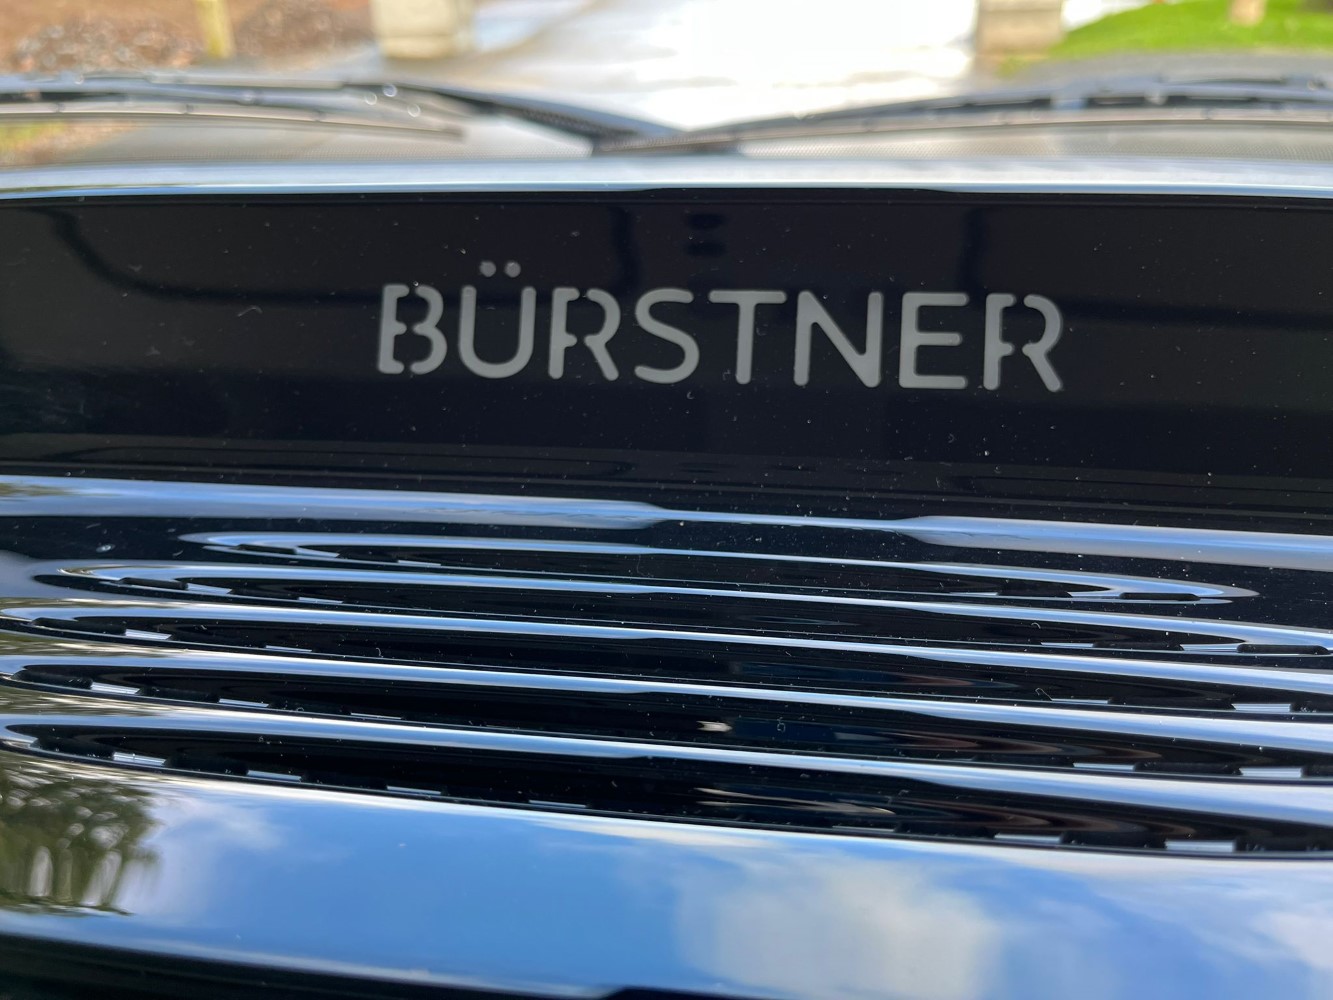 NEW BURSTNER ELEGANCE i920 - AUTOMATIC